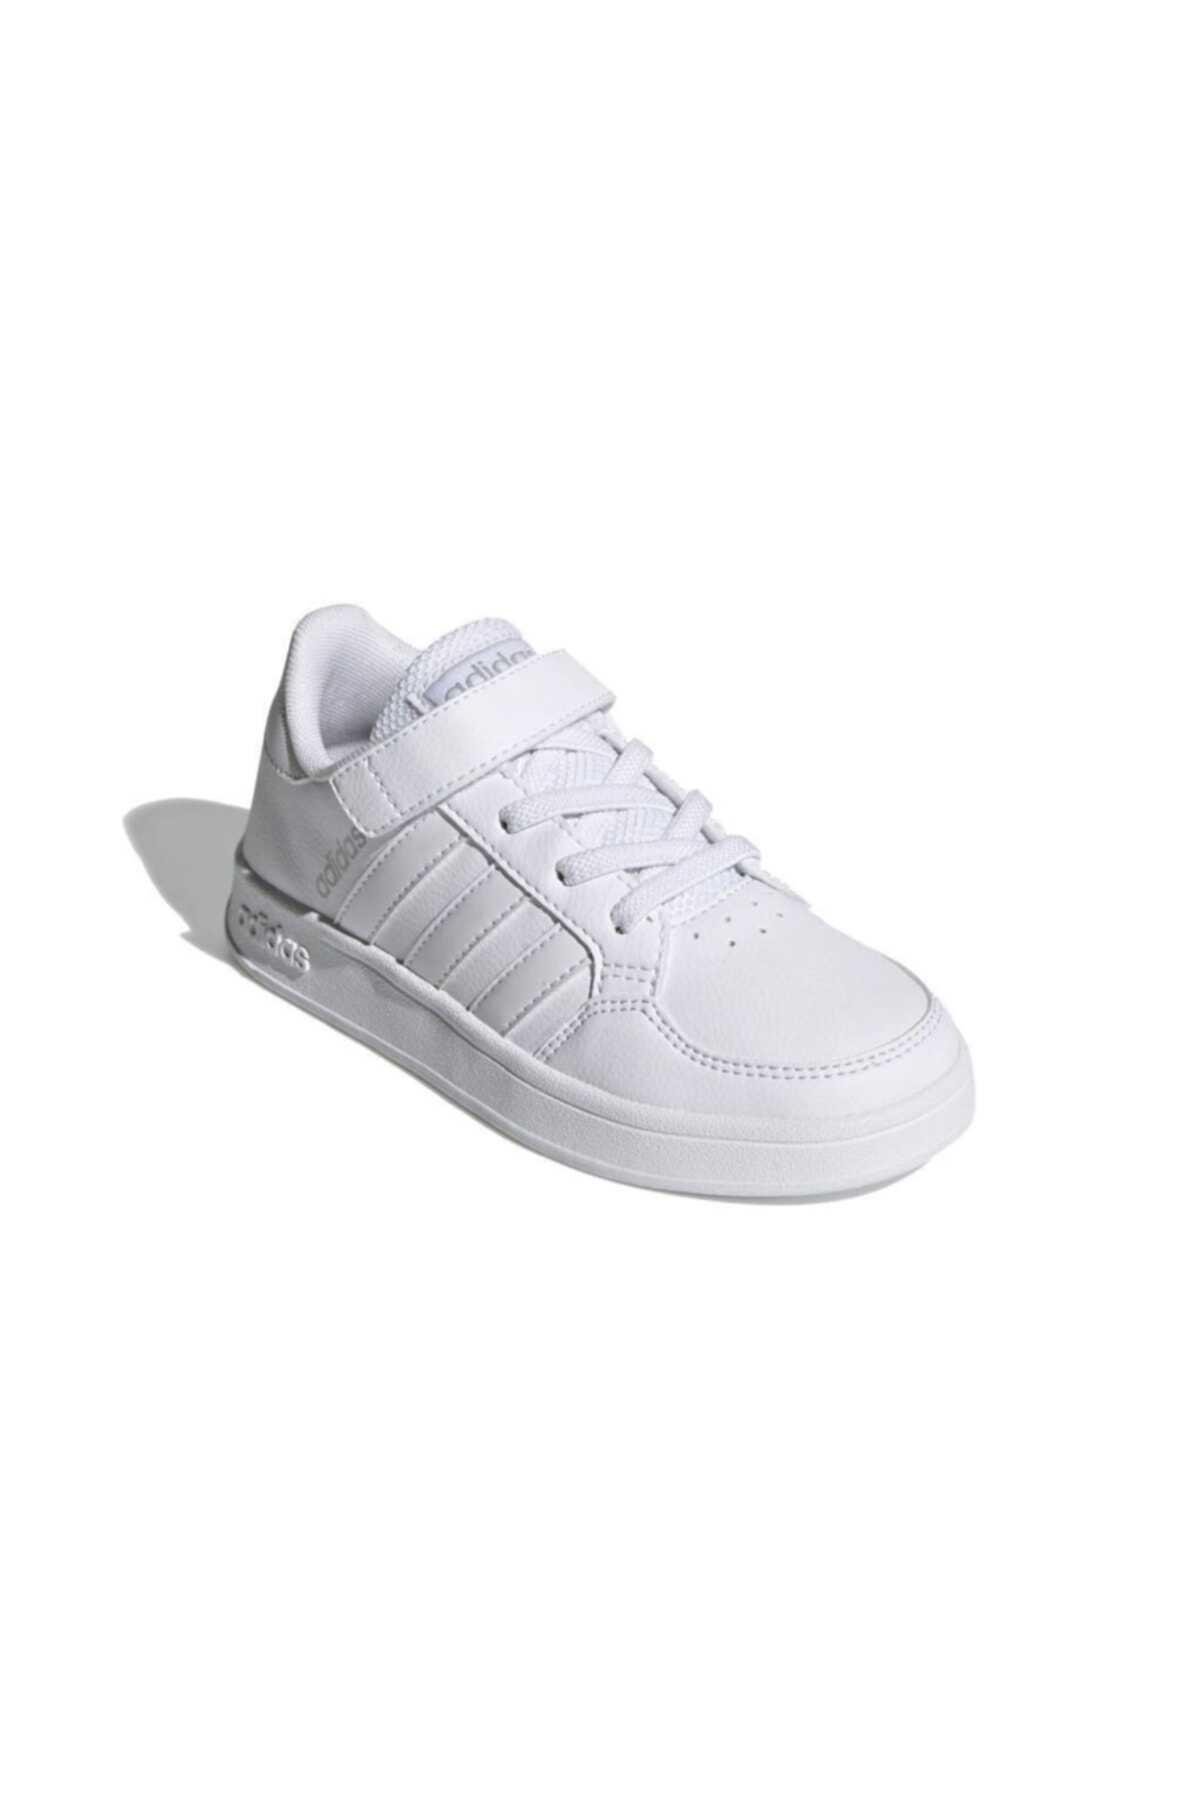 کفش اسپرت بچه گانه سری Fz0108 سفید برند adidas 